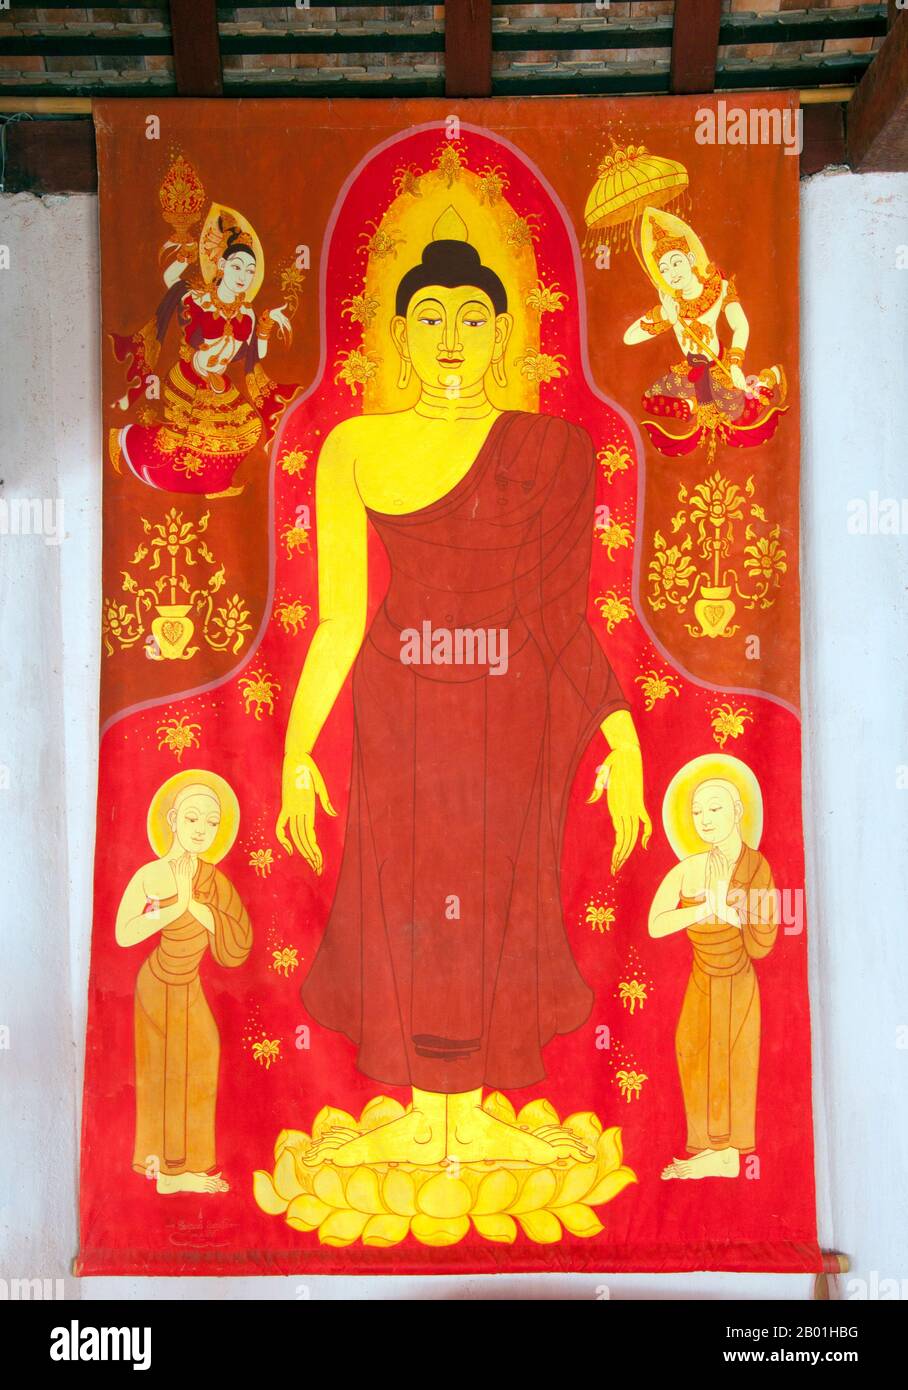 Thaïlande : une bannière représentant le Bouddha à l'intérieur du viharn, Wat Lai Hin, province de Lampang. Wat Lai Hin Kaew Chang Yuan (Temple de l'éléphant debout avec l'épaule de pierre) a été construit à l'origine en 1683. Banque D'Images